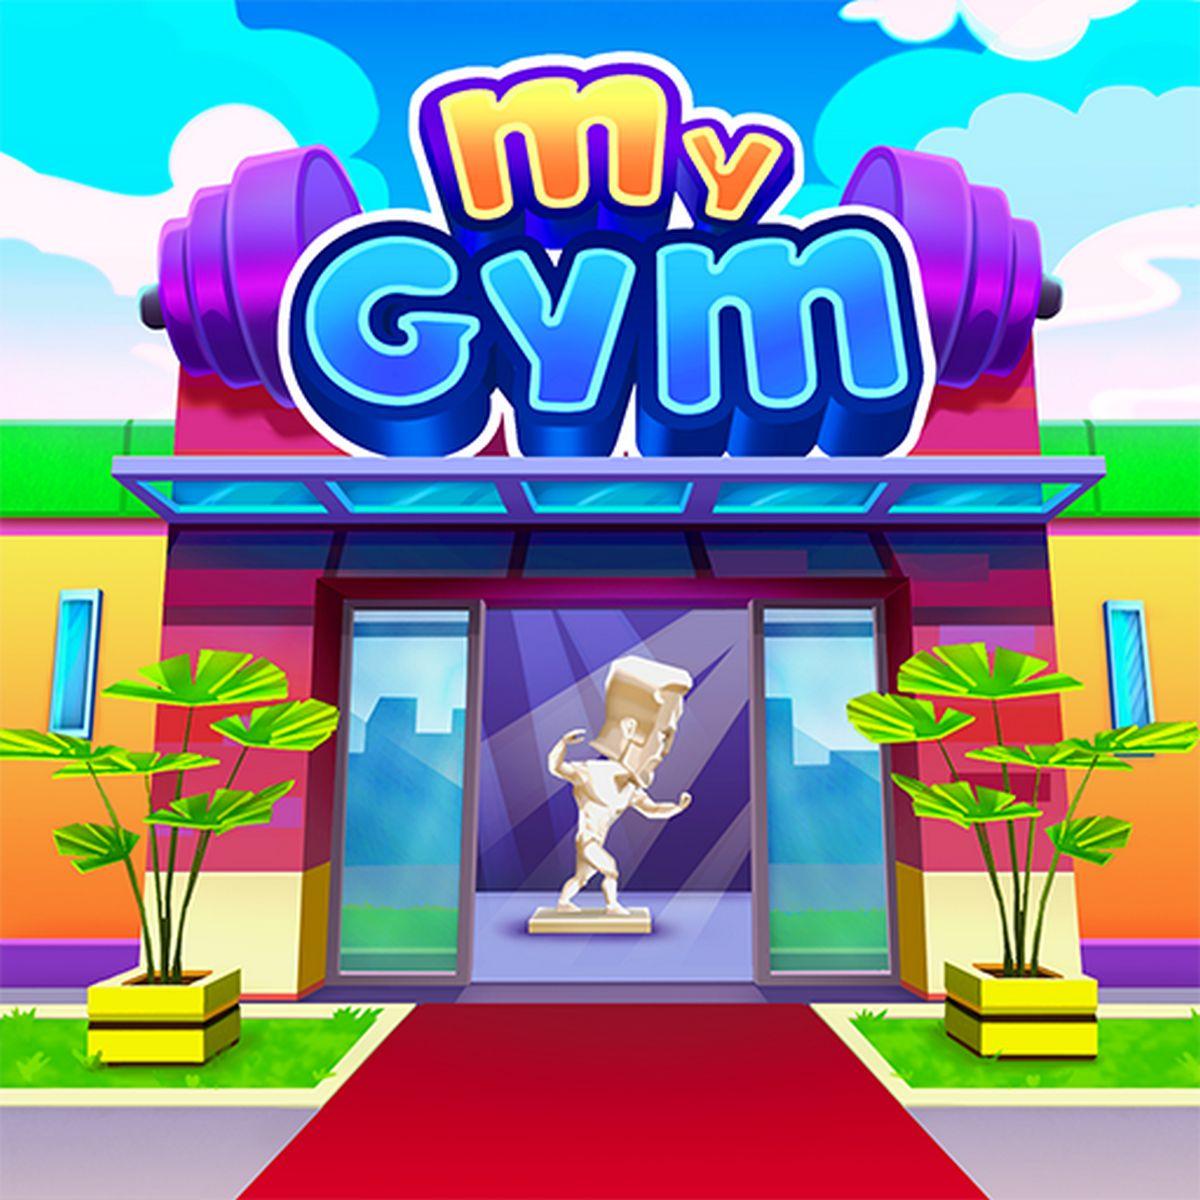 My Gym: Fitness Studio Manager APK MOD v4.2.2822 (Cash/Dinero infinito)